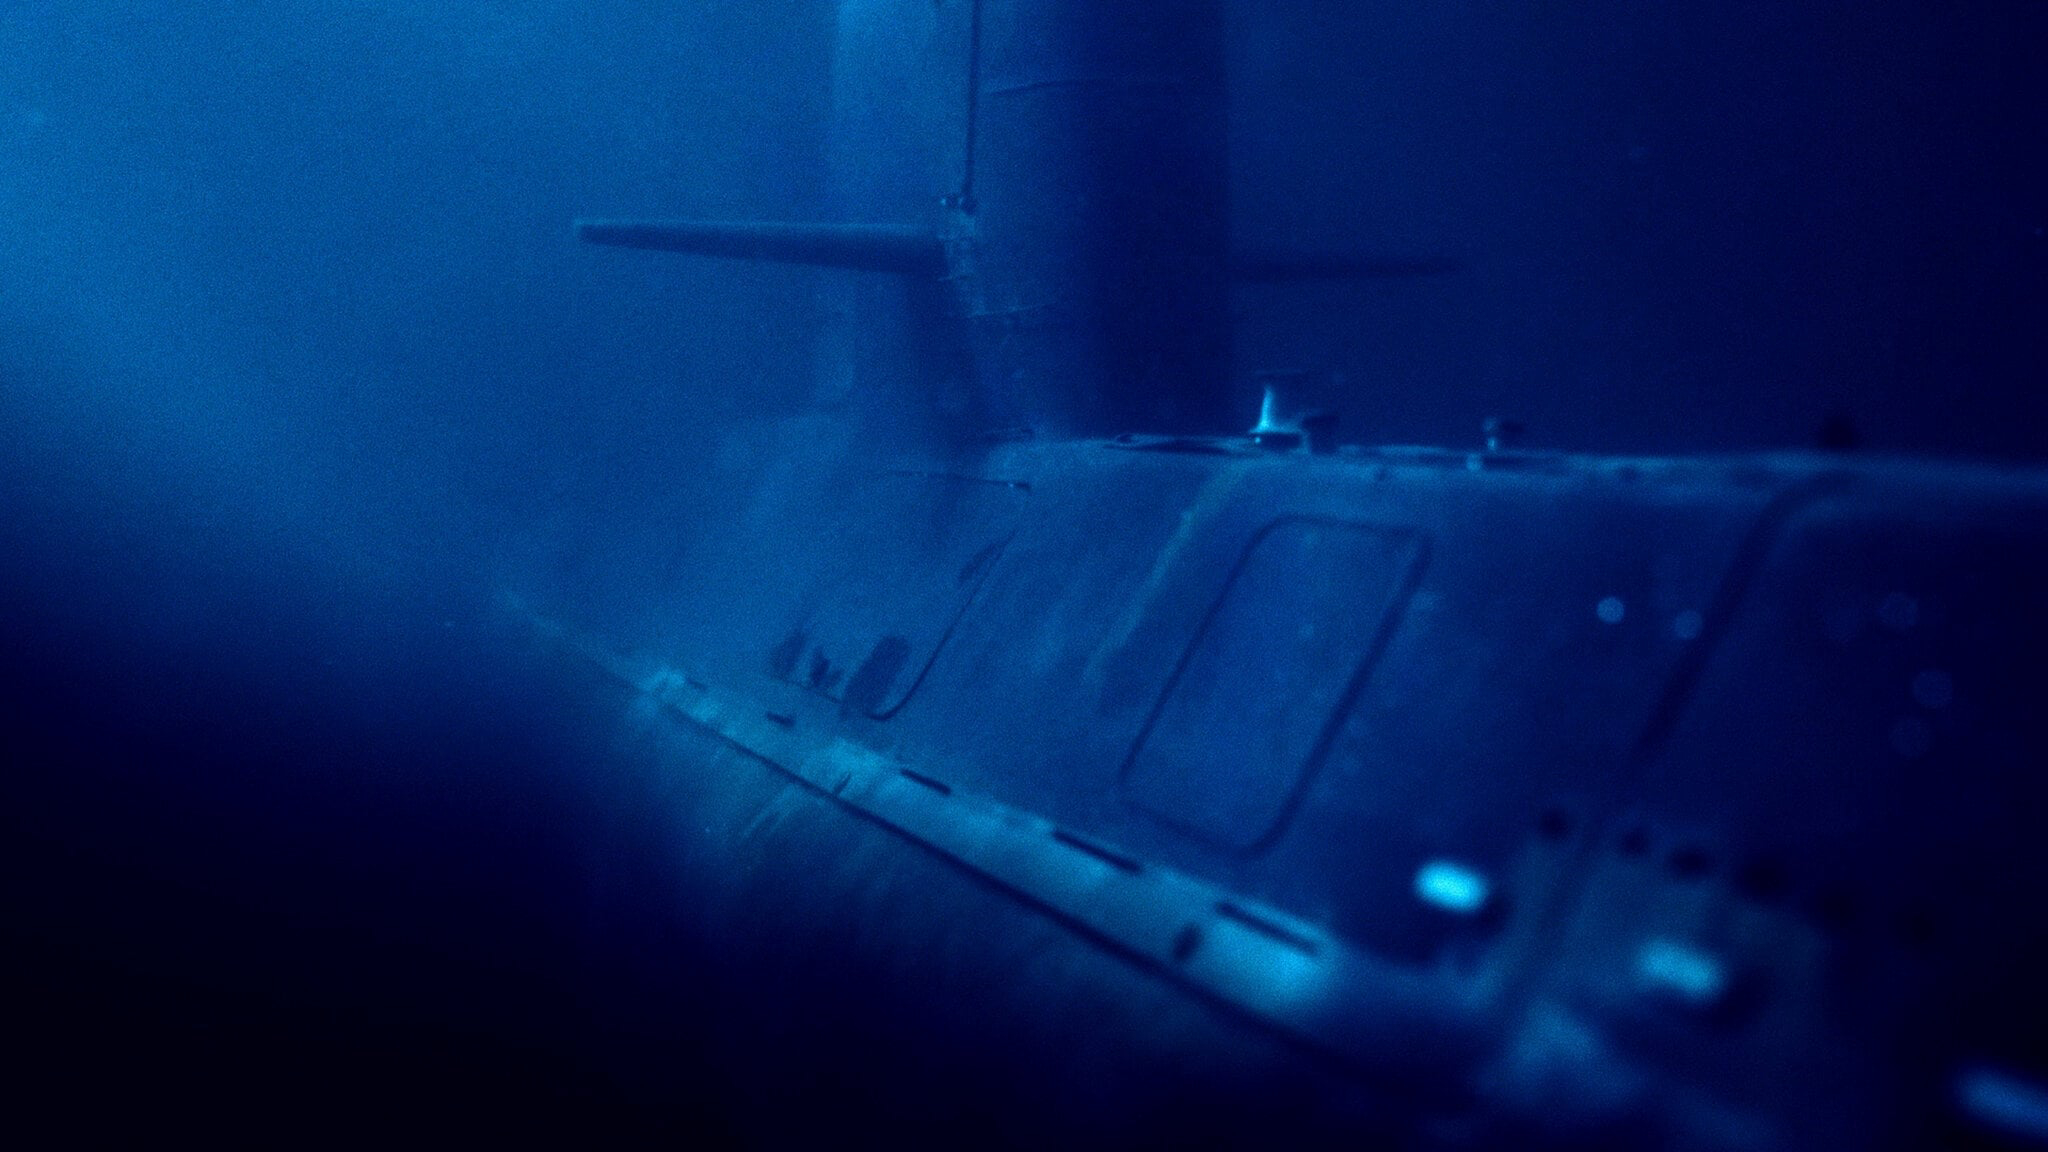 Banner Phim ARA San Juan: Chiếc tàu ngầm mất tích (ARA San Juan: The Submarine that Disappeared)